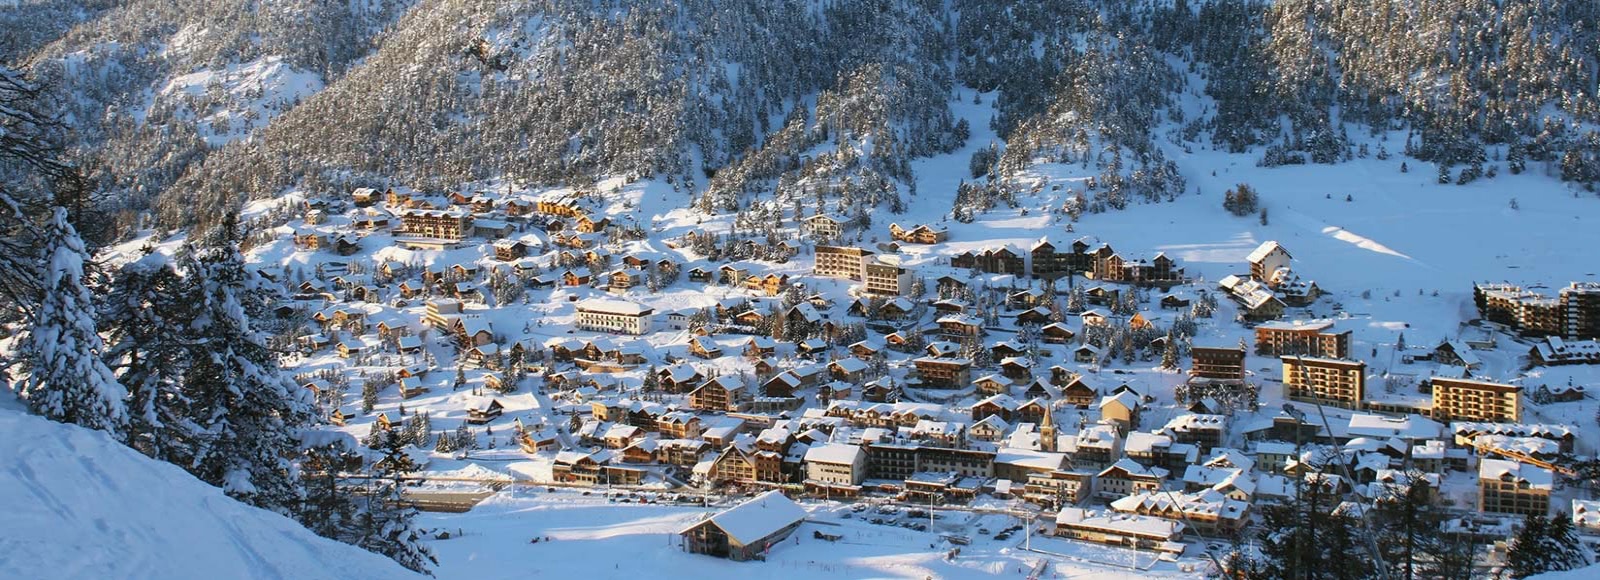 Montgenèvre - Une station de ski à deux pas de la frontière Italienne